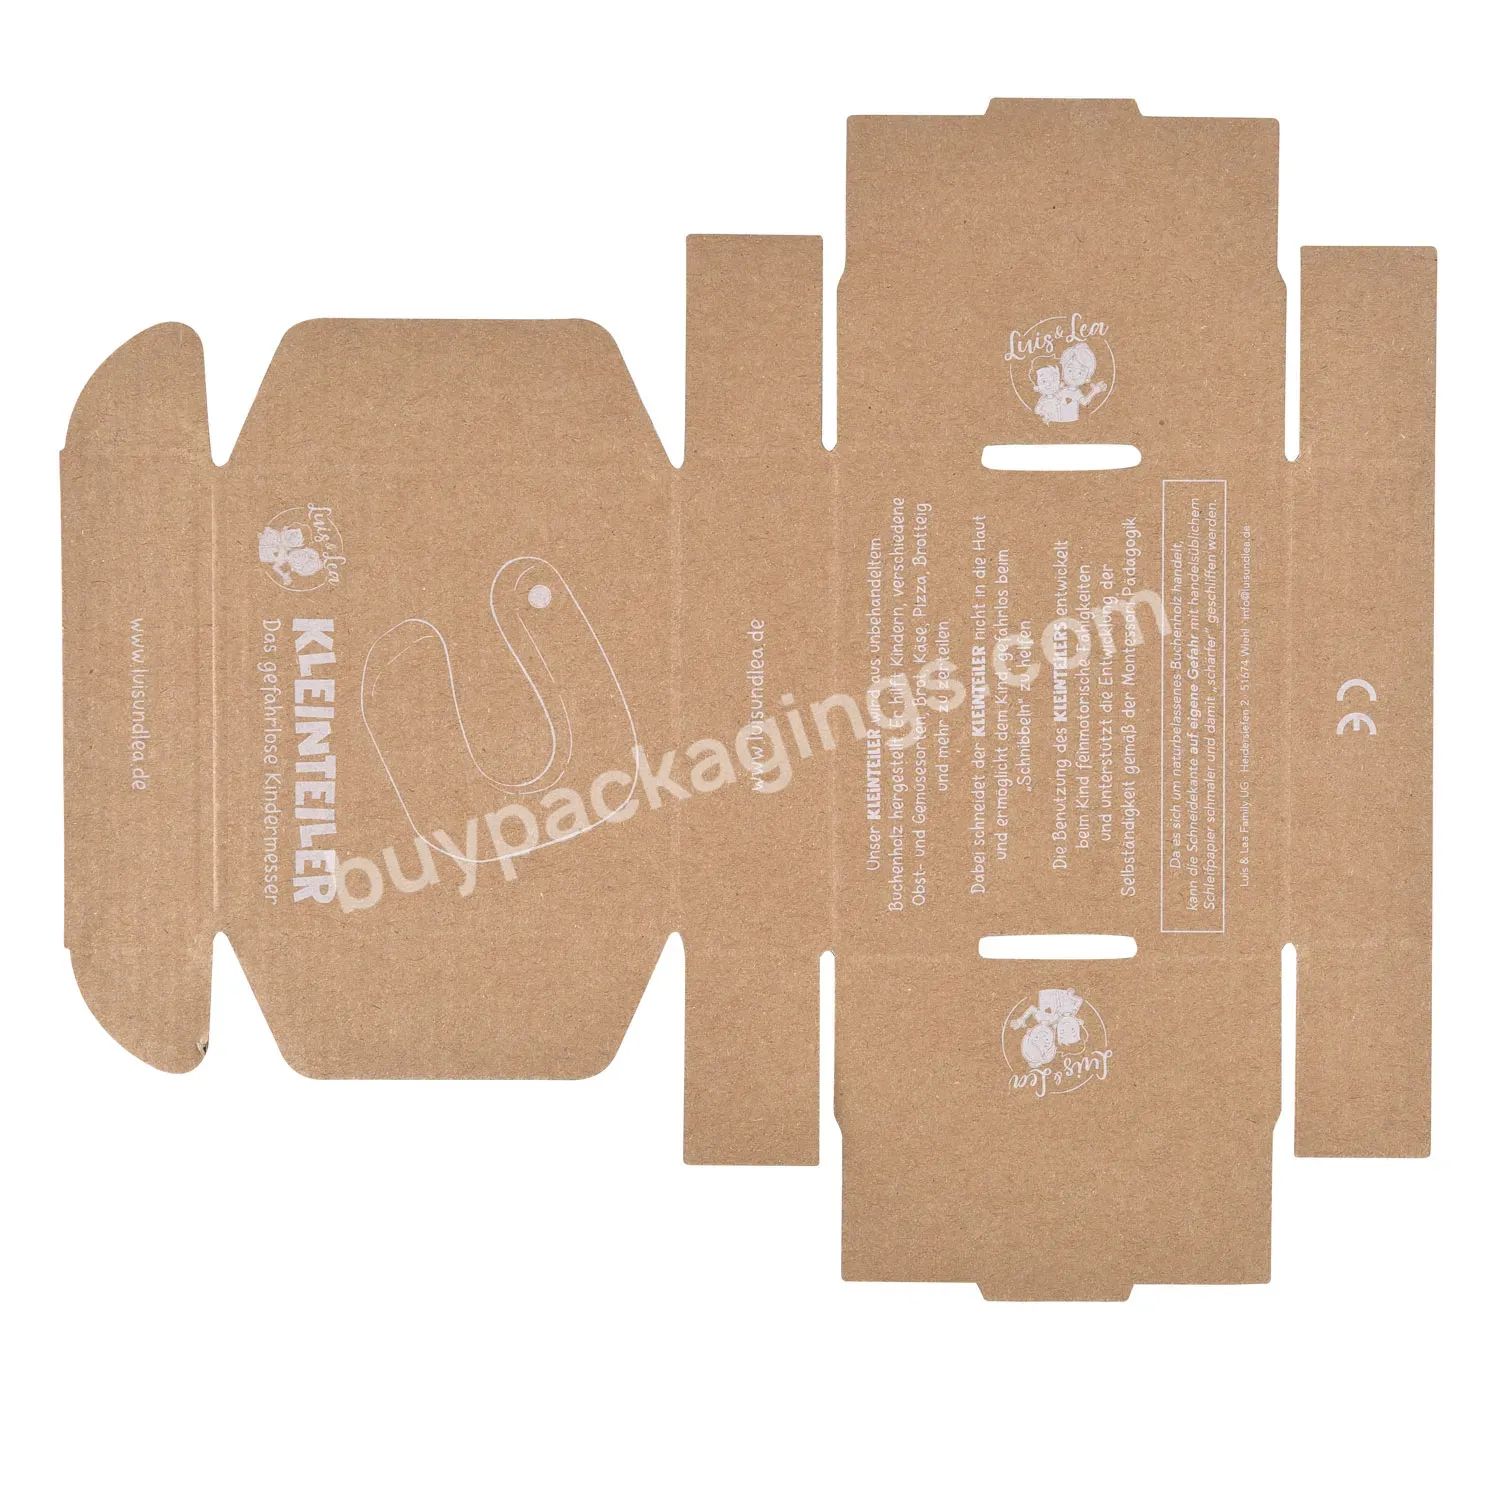 Custom Luxury Brown Cardboard Paper Box For Packaging Box